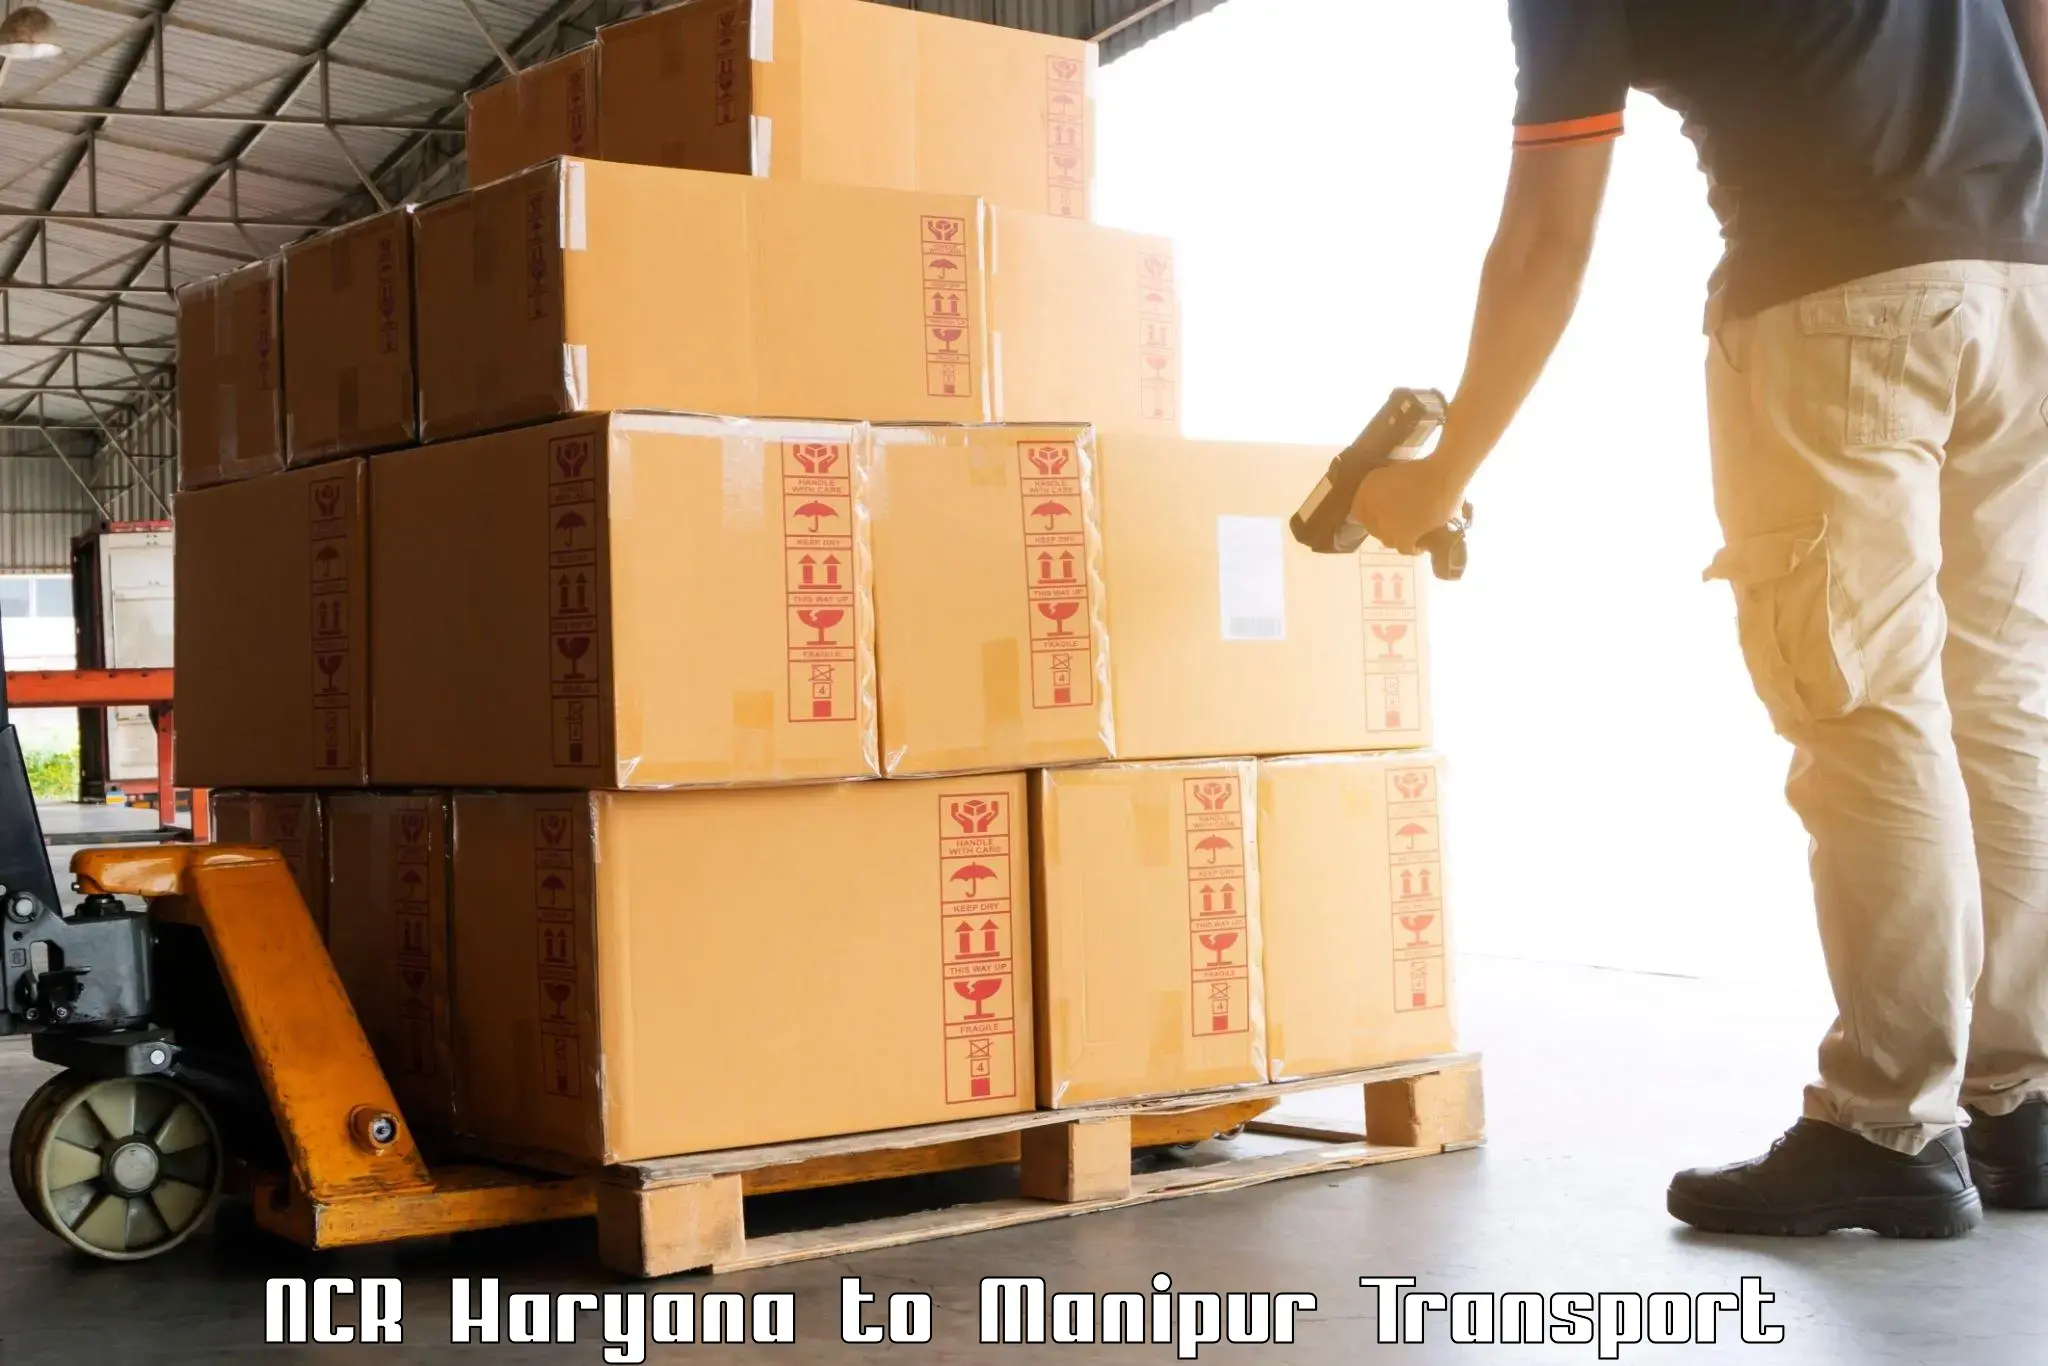 Air cargo transport services NCR Haryana to Kaptipada